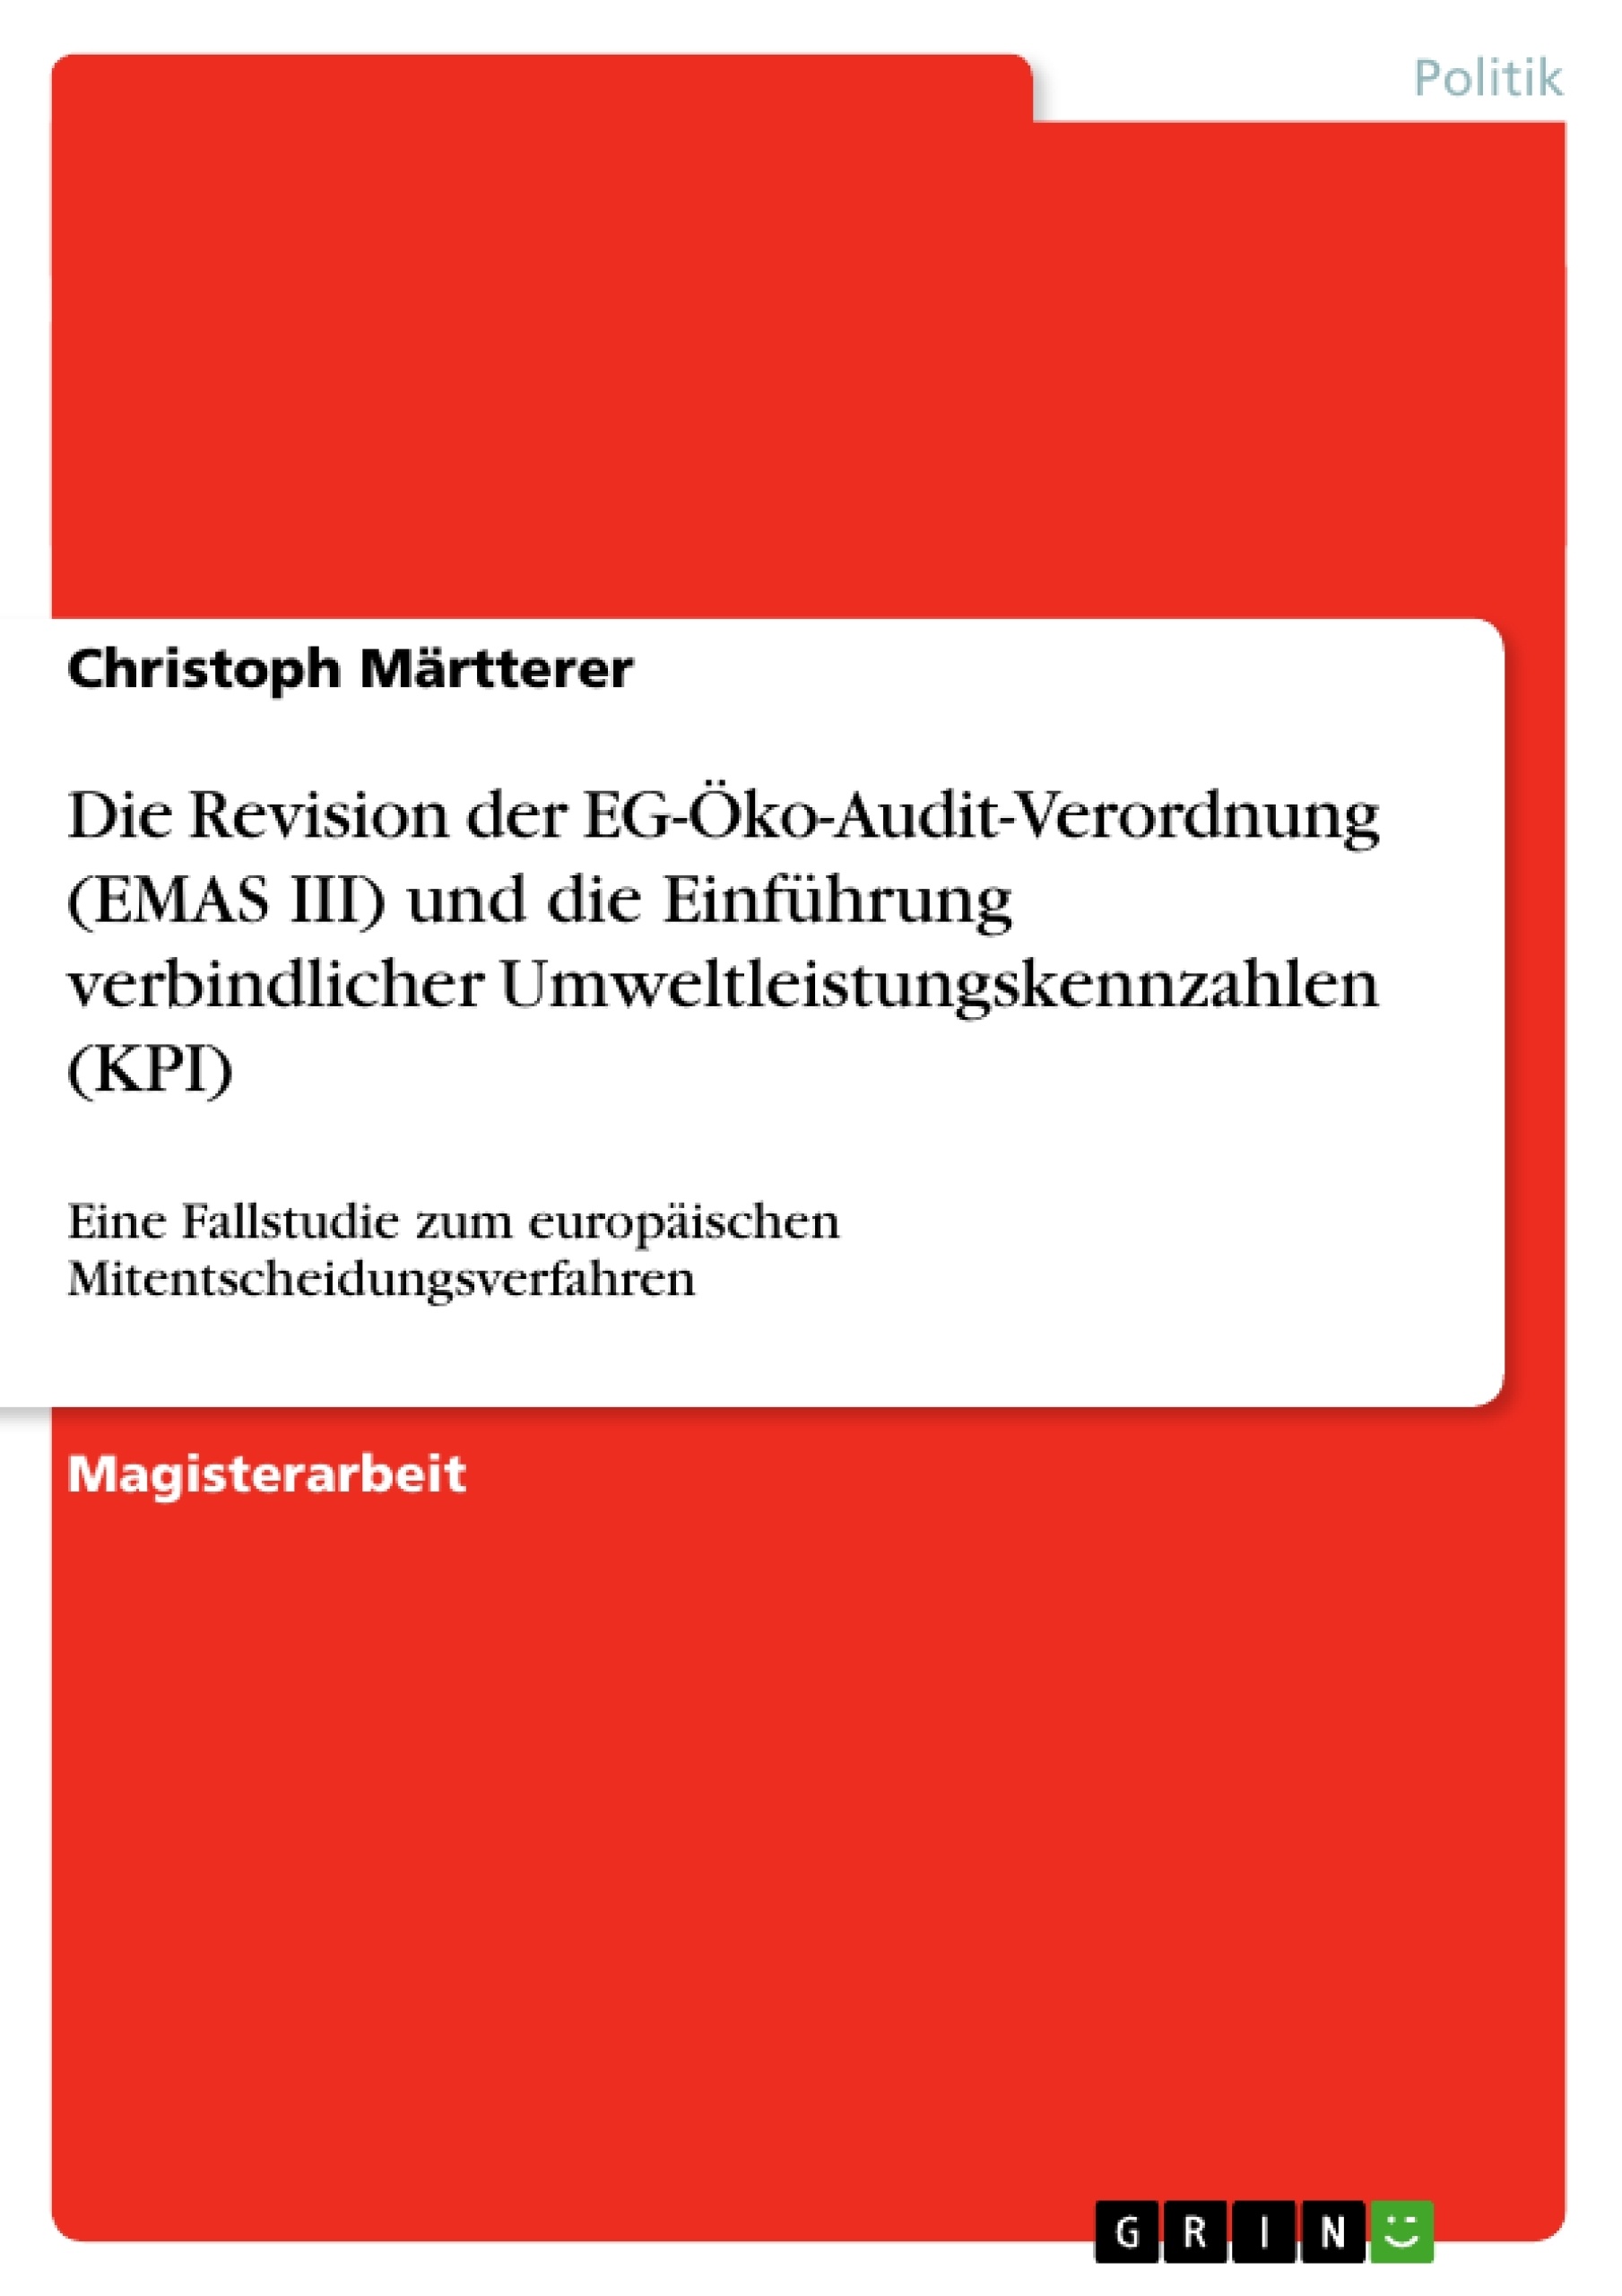 Título: Die Revision der EG-Öko-Audit-Verordnung (EMAS III) und die Einführung verbindlicher Umweltleistungskennzahlen (KPI)